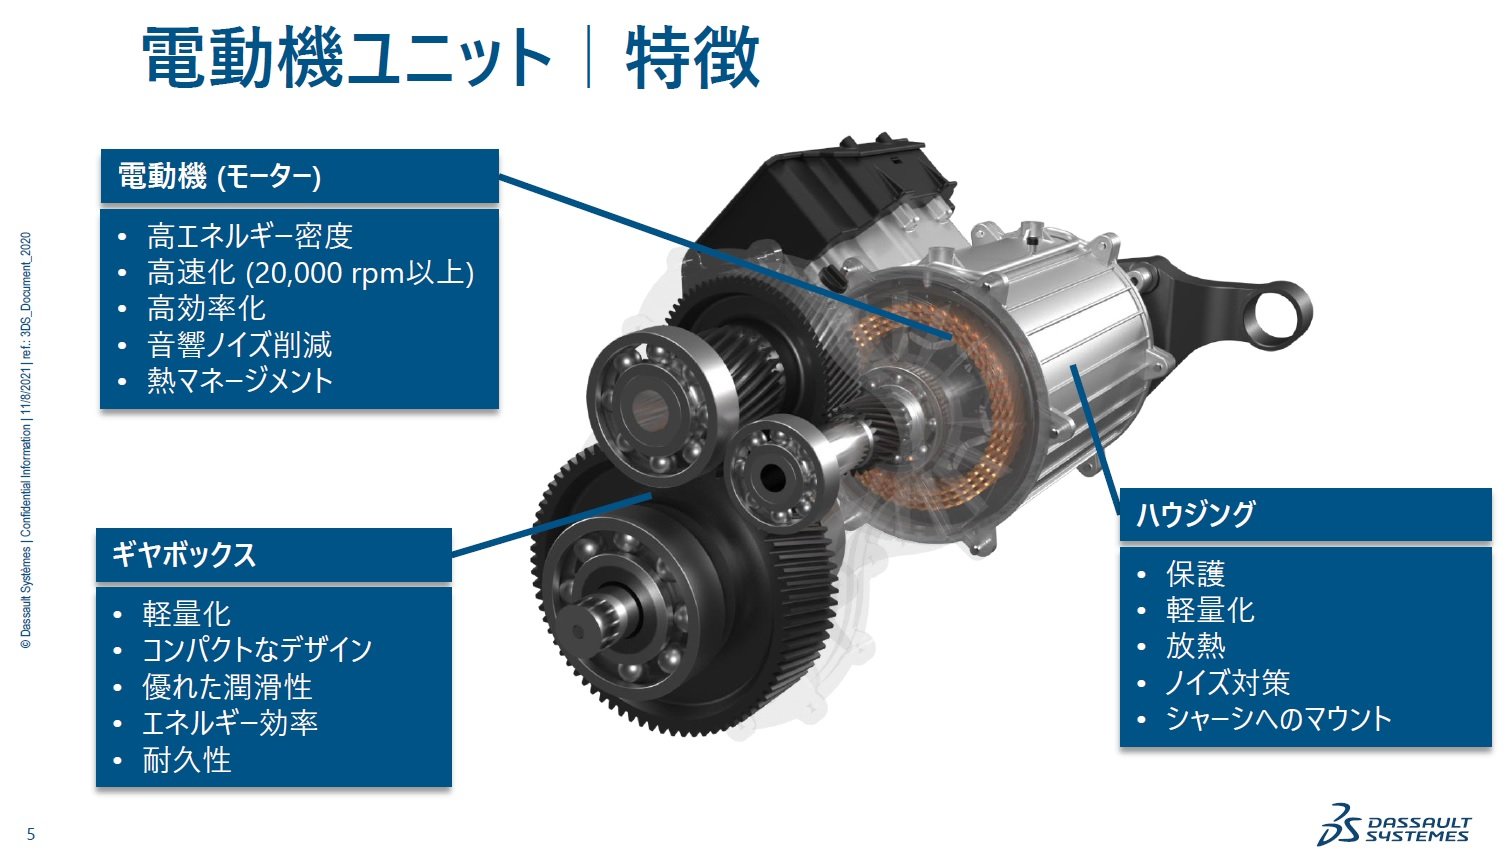 Ev用モーターユニットの設計開発で直面する2つの課題とその解決策 Evの開発サイクルを加速する モーター編 Monoist